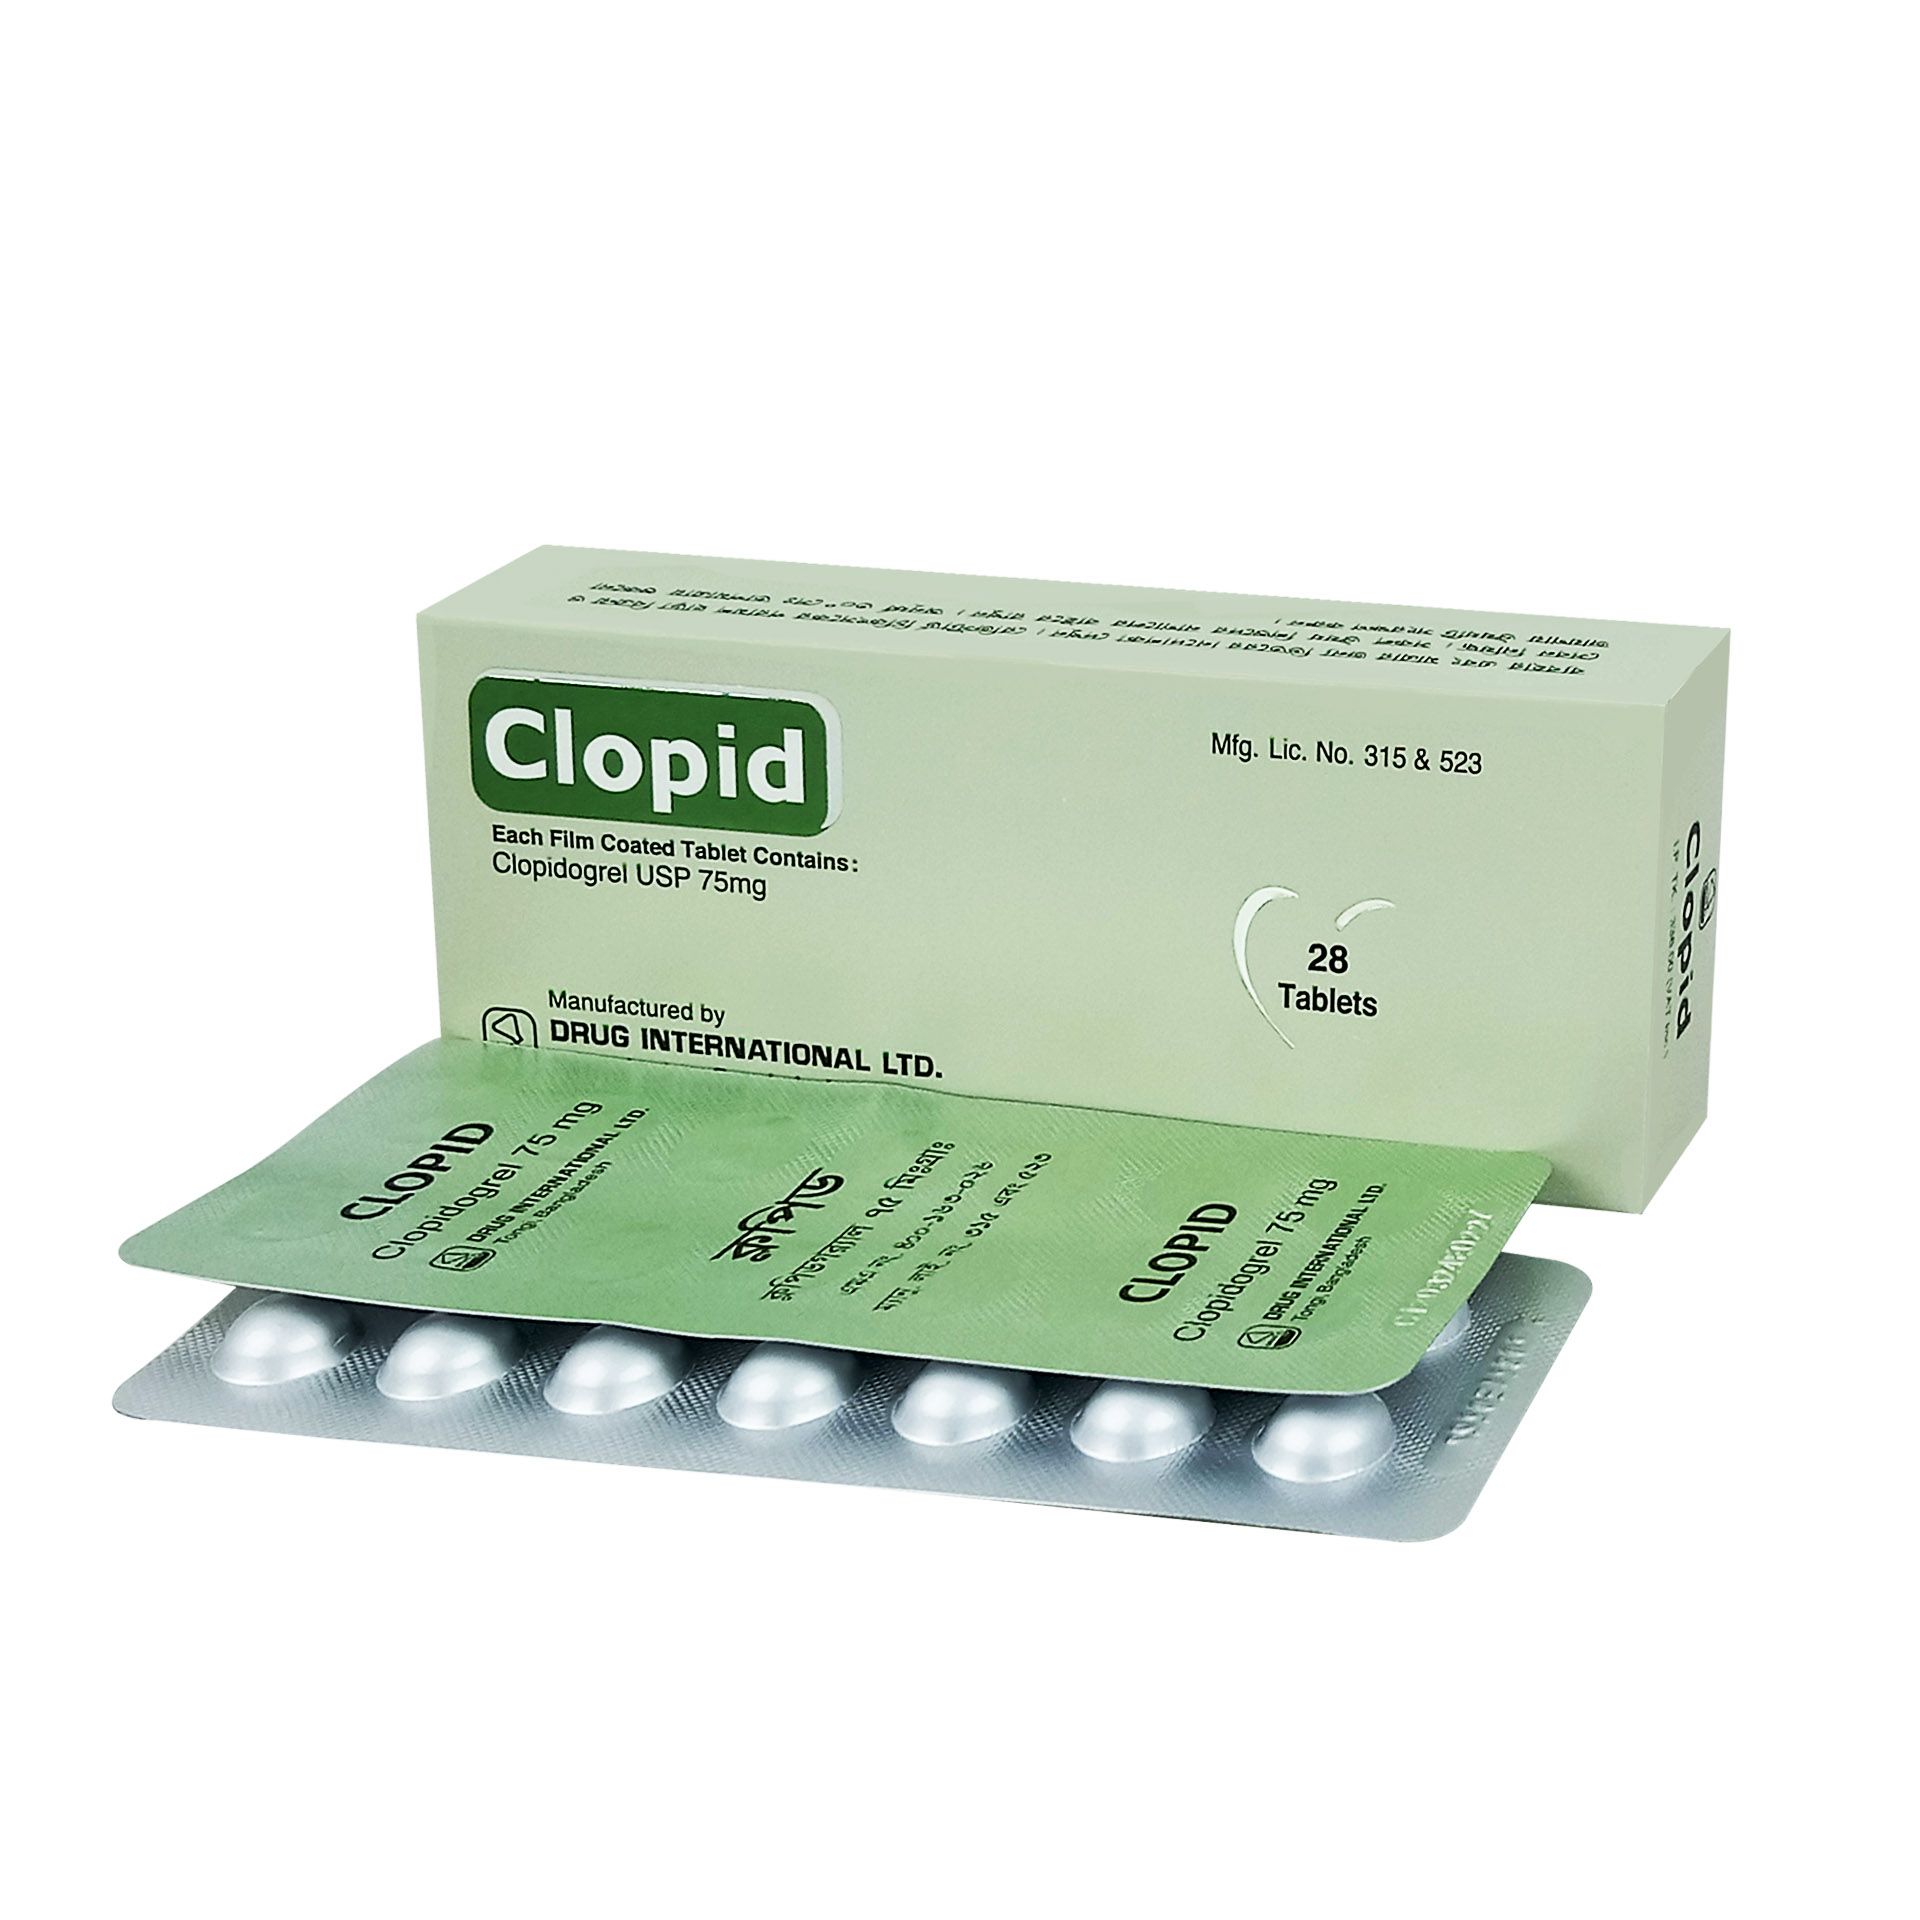 Clopid 75mg Tablet